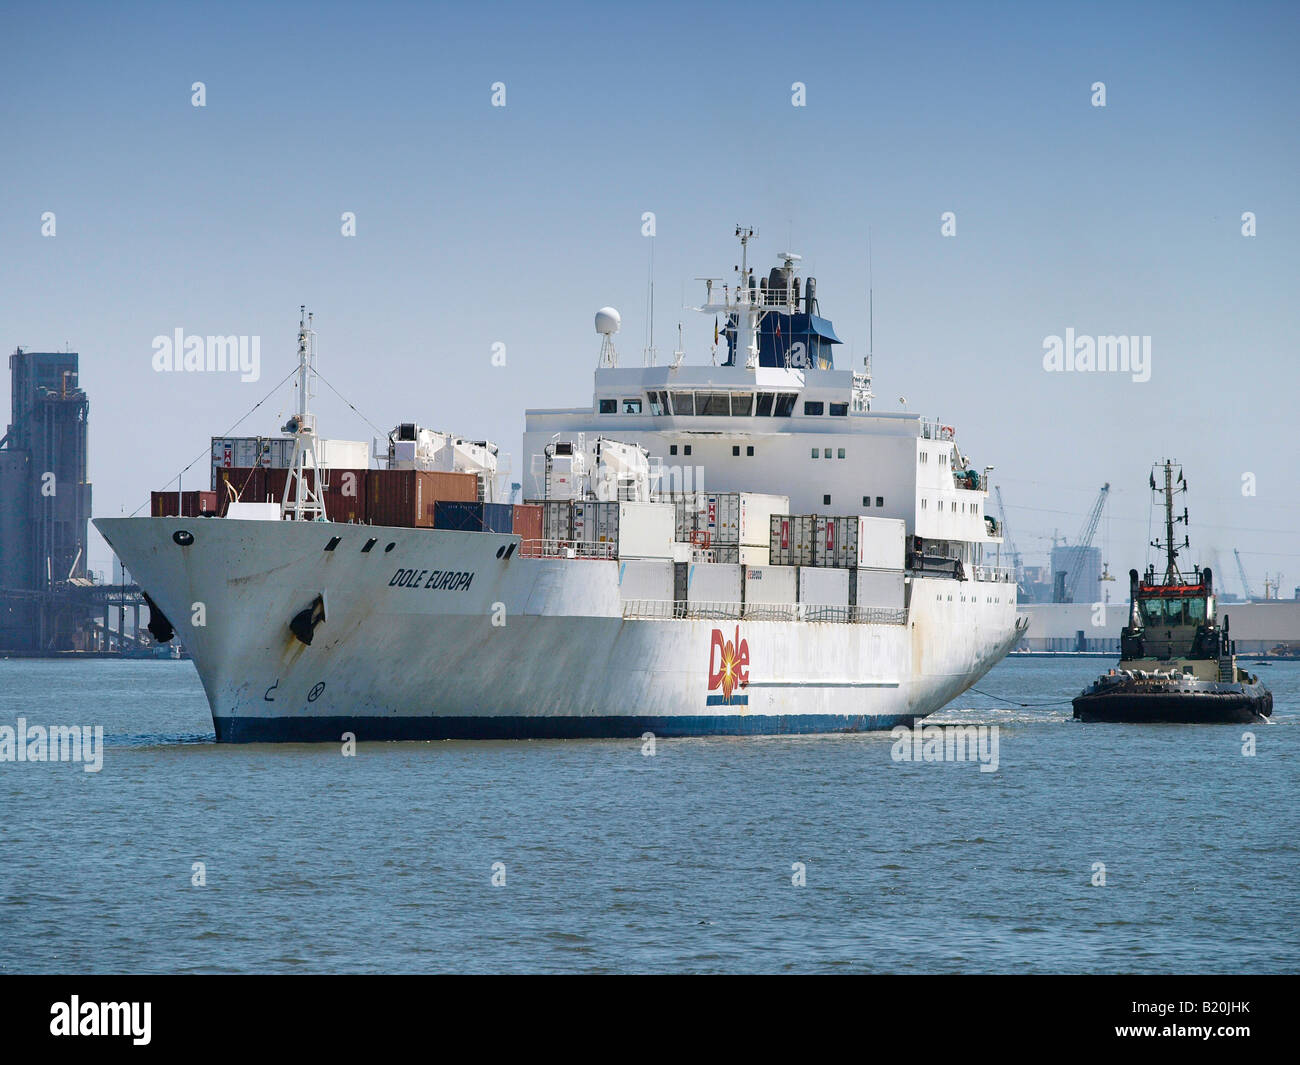 Dole globale Frucht Transportschiff in den Hafen von Antwerpen, die Europa s premier Frucht und Gemüse Import Hafen Belgien Stockfoto